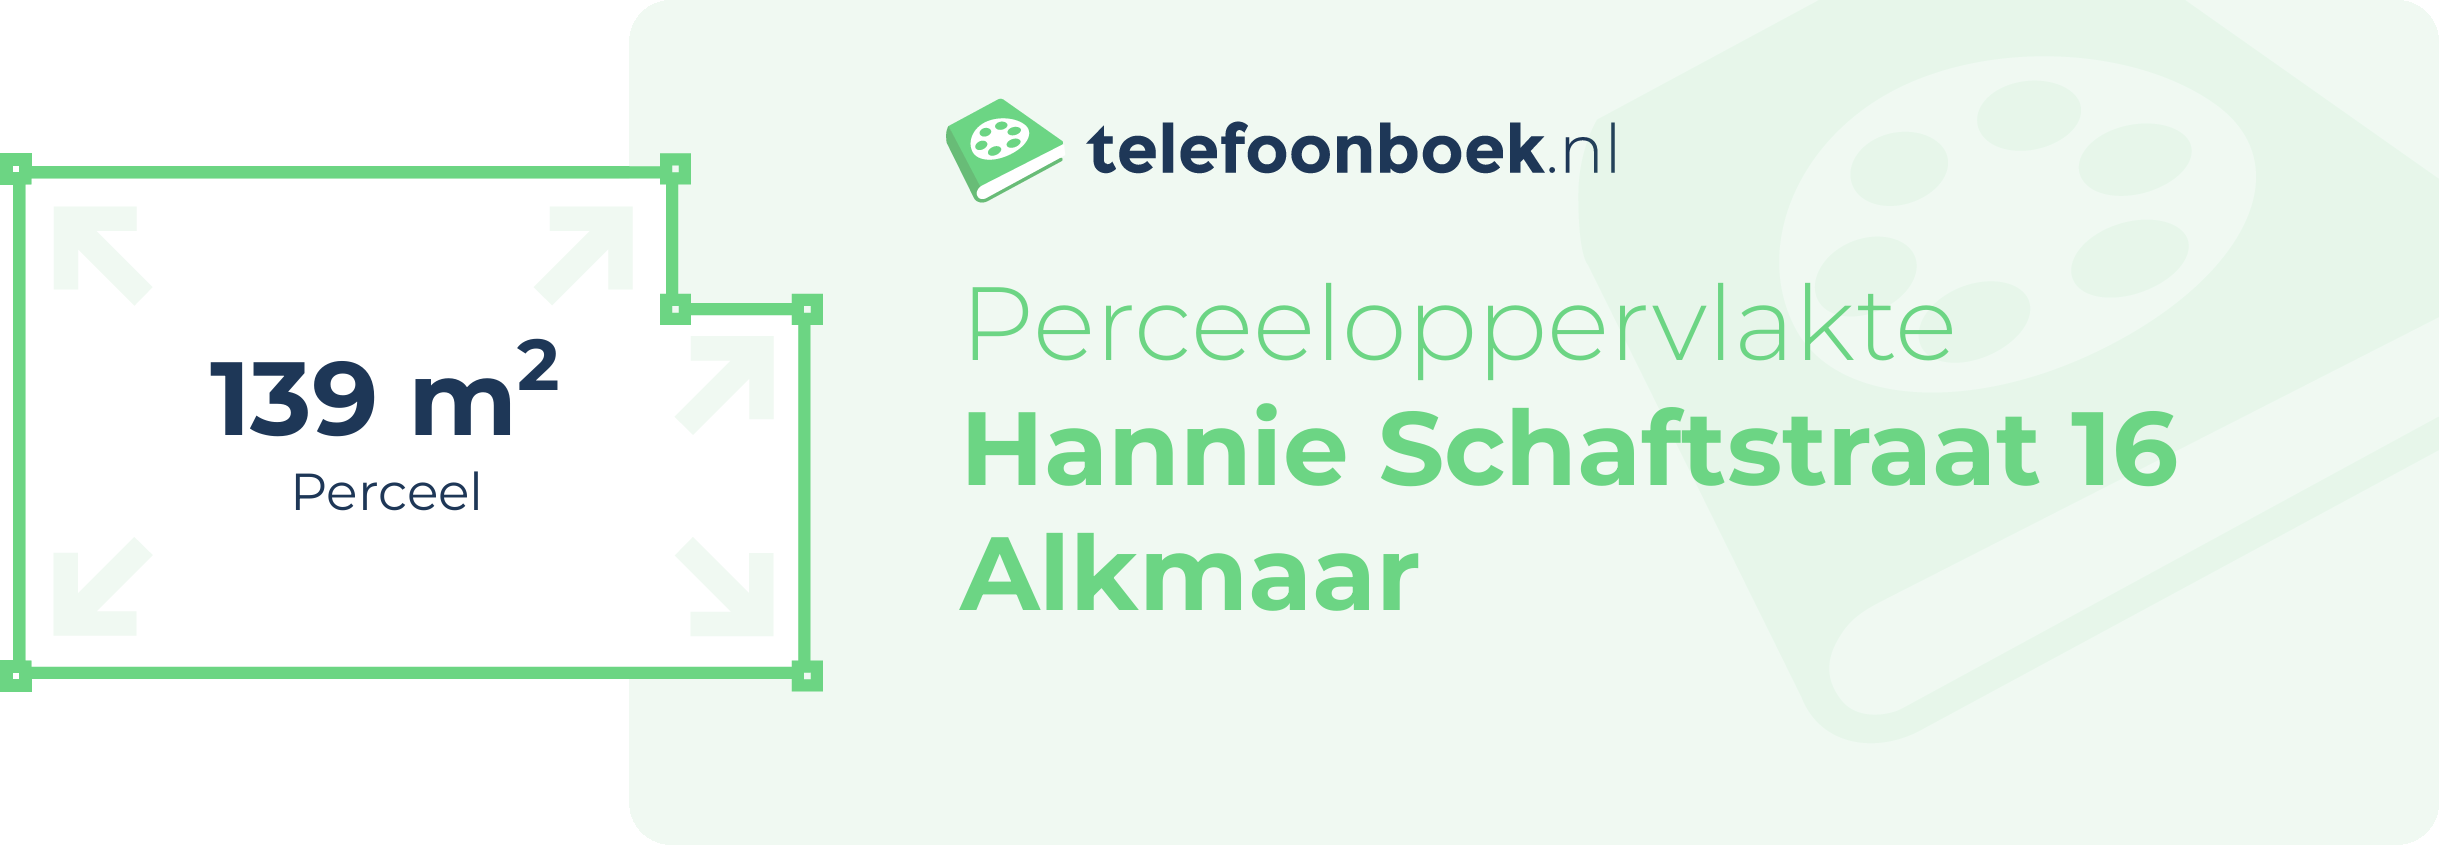 Perceeloppervlakte Hannie Schaftstraat 16 Alkmaar